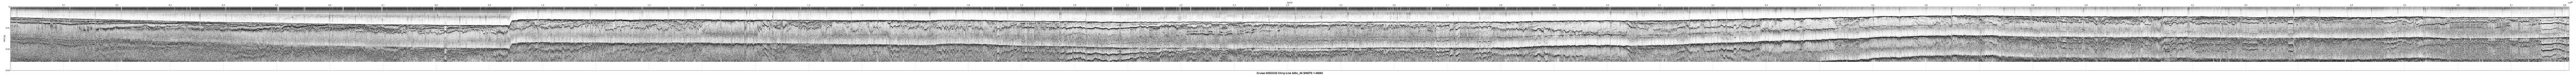 00SCC02 b00c_46 seismic profile image